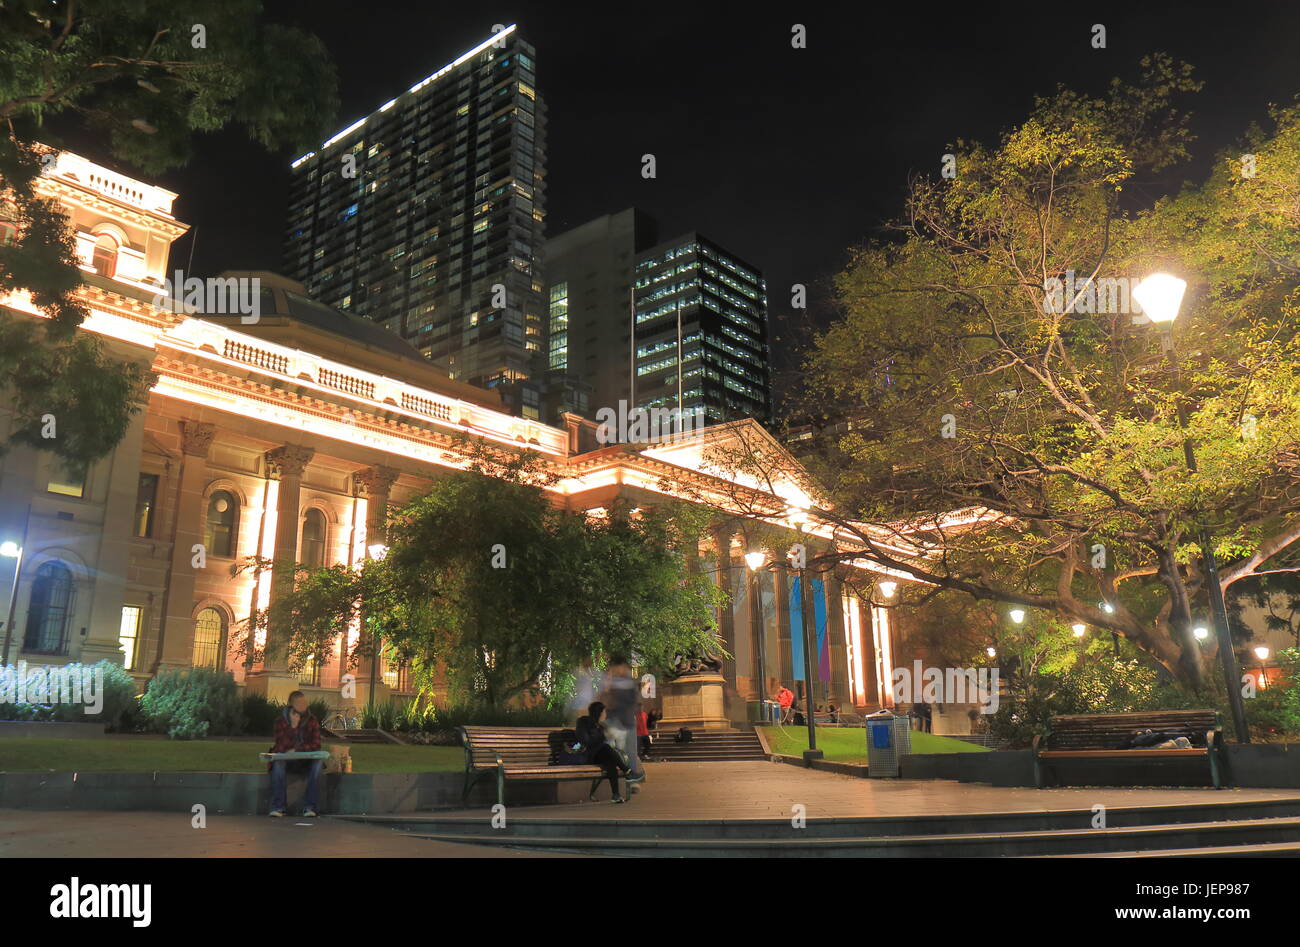 L'architecture historique de la bibliothèque de Melbourne Australie Banque D'Images